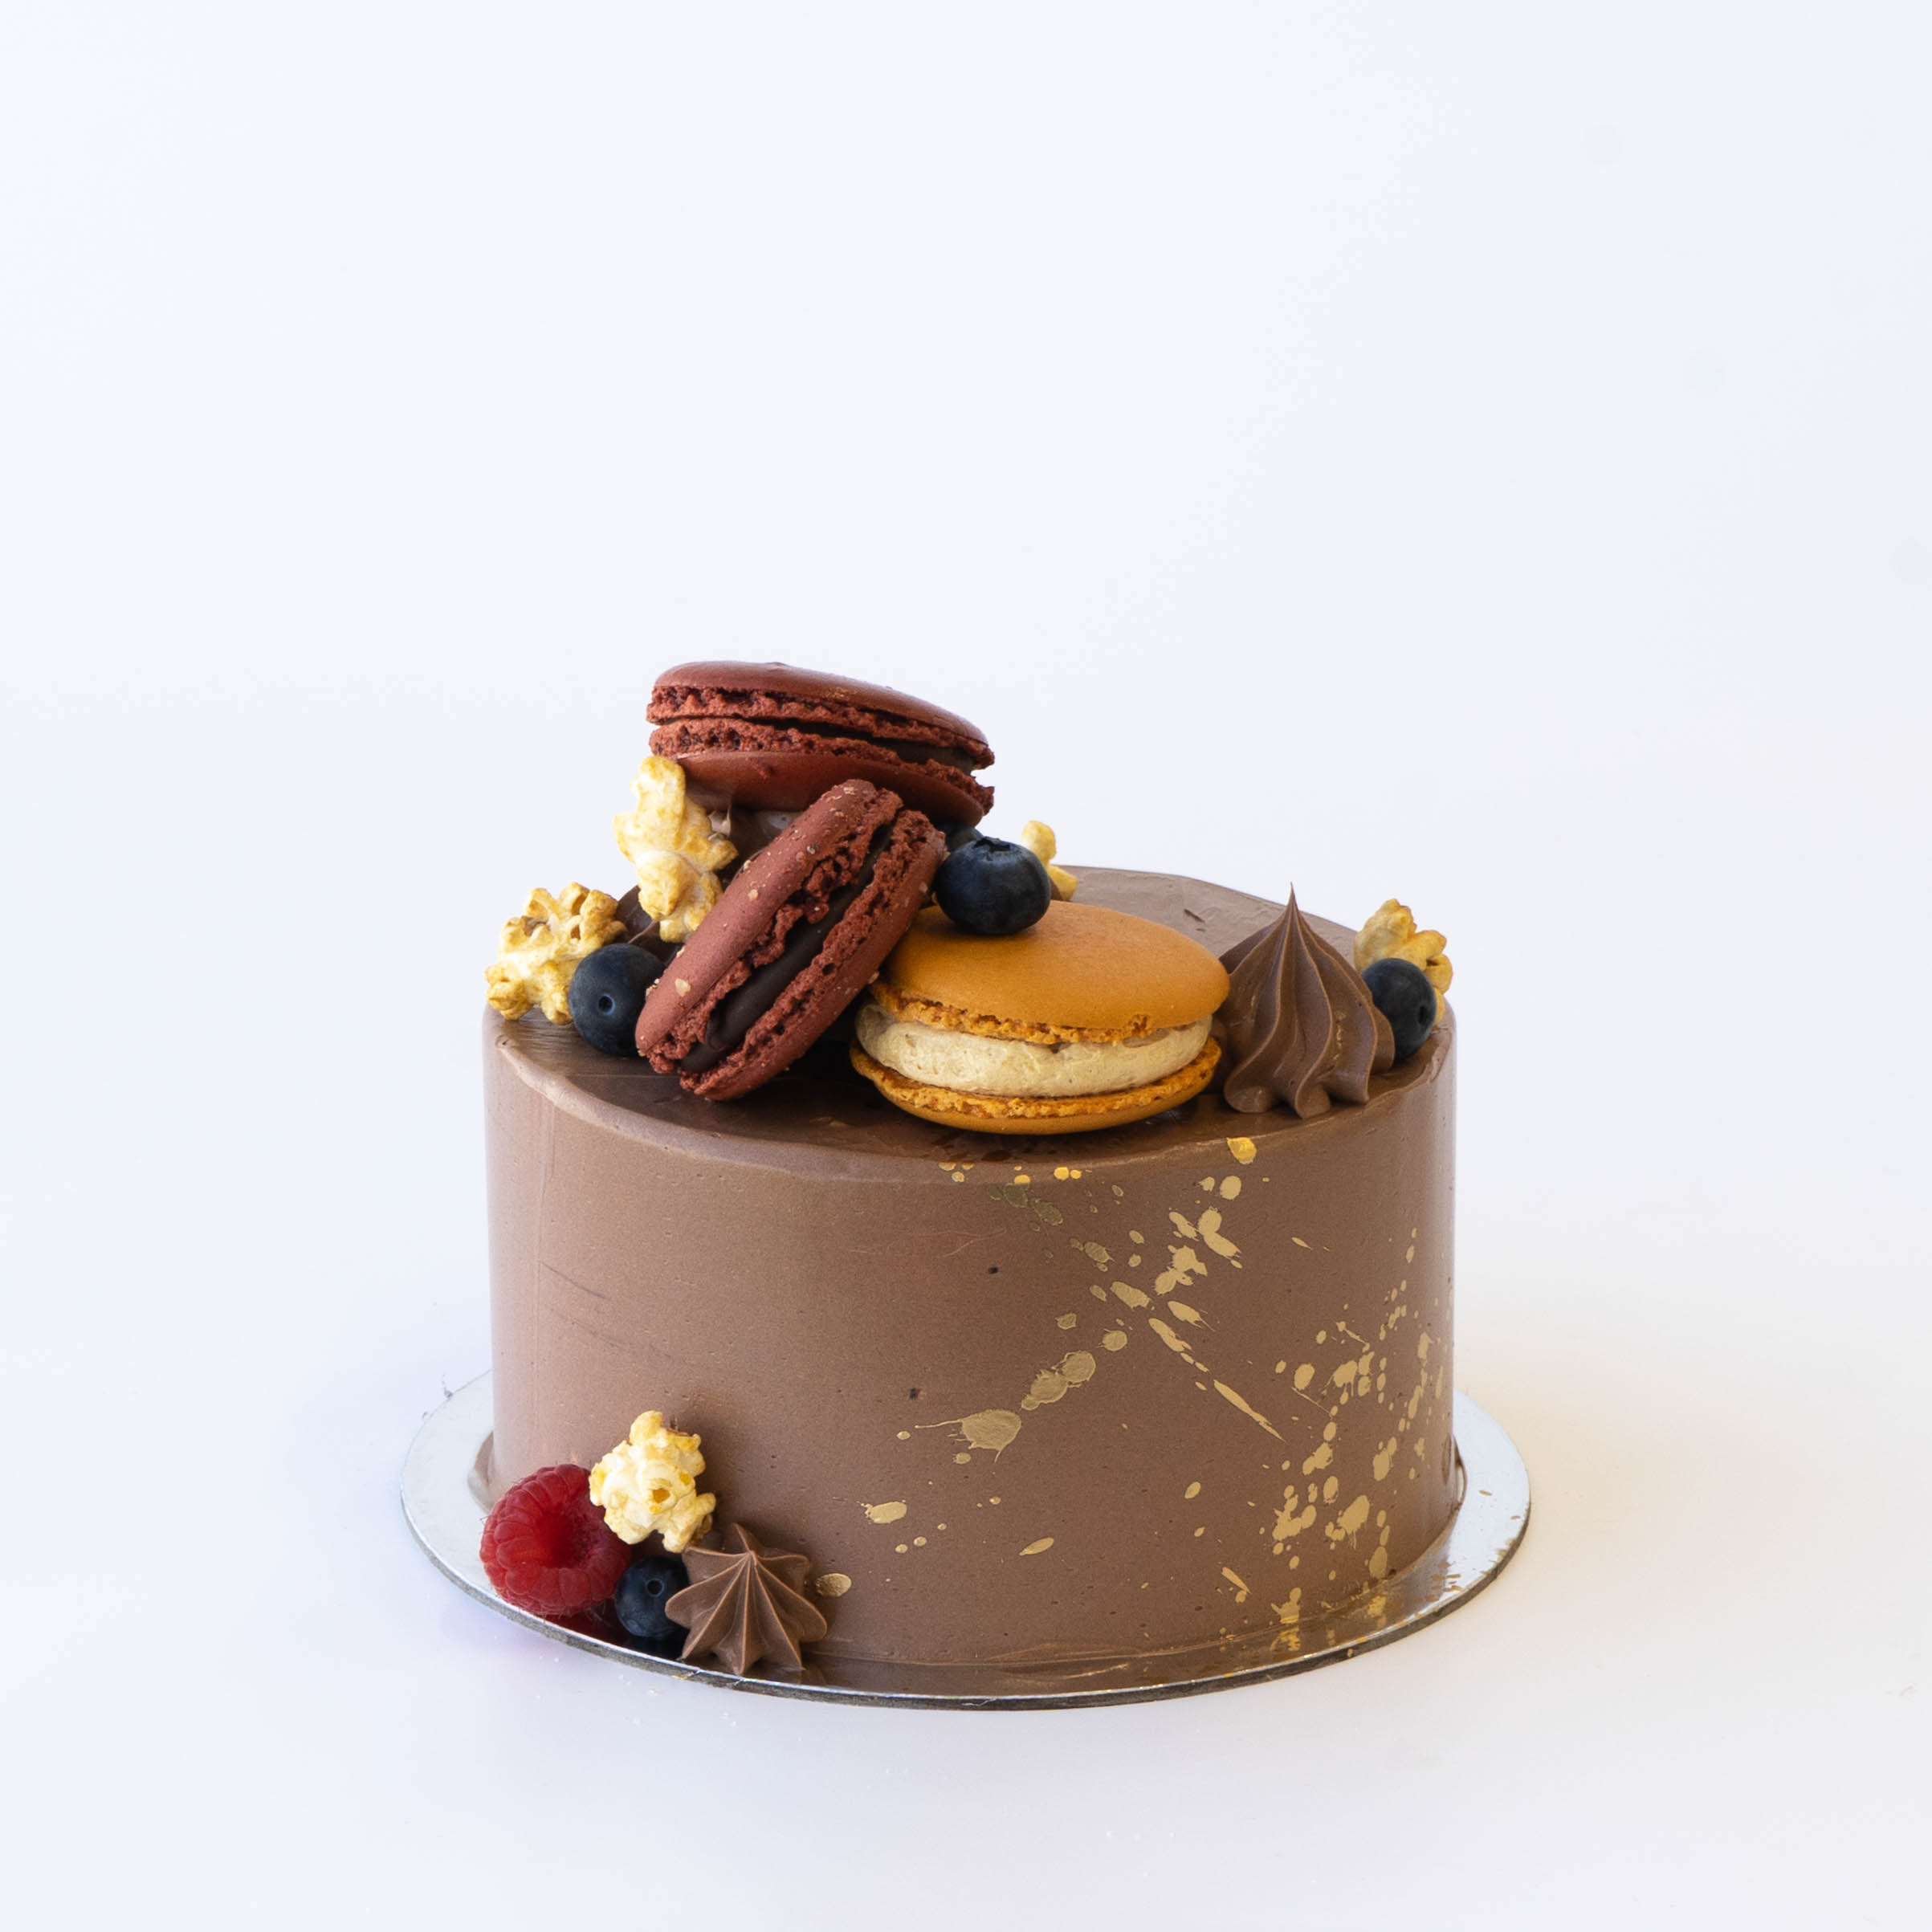 Cách làm chocolate cake decorated with macarons tuyệt đẹp và ngon miệng